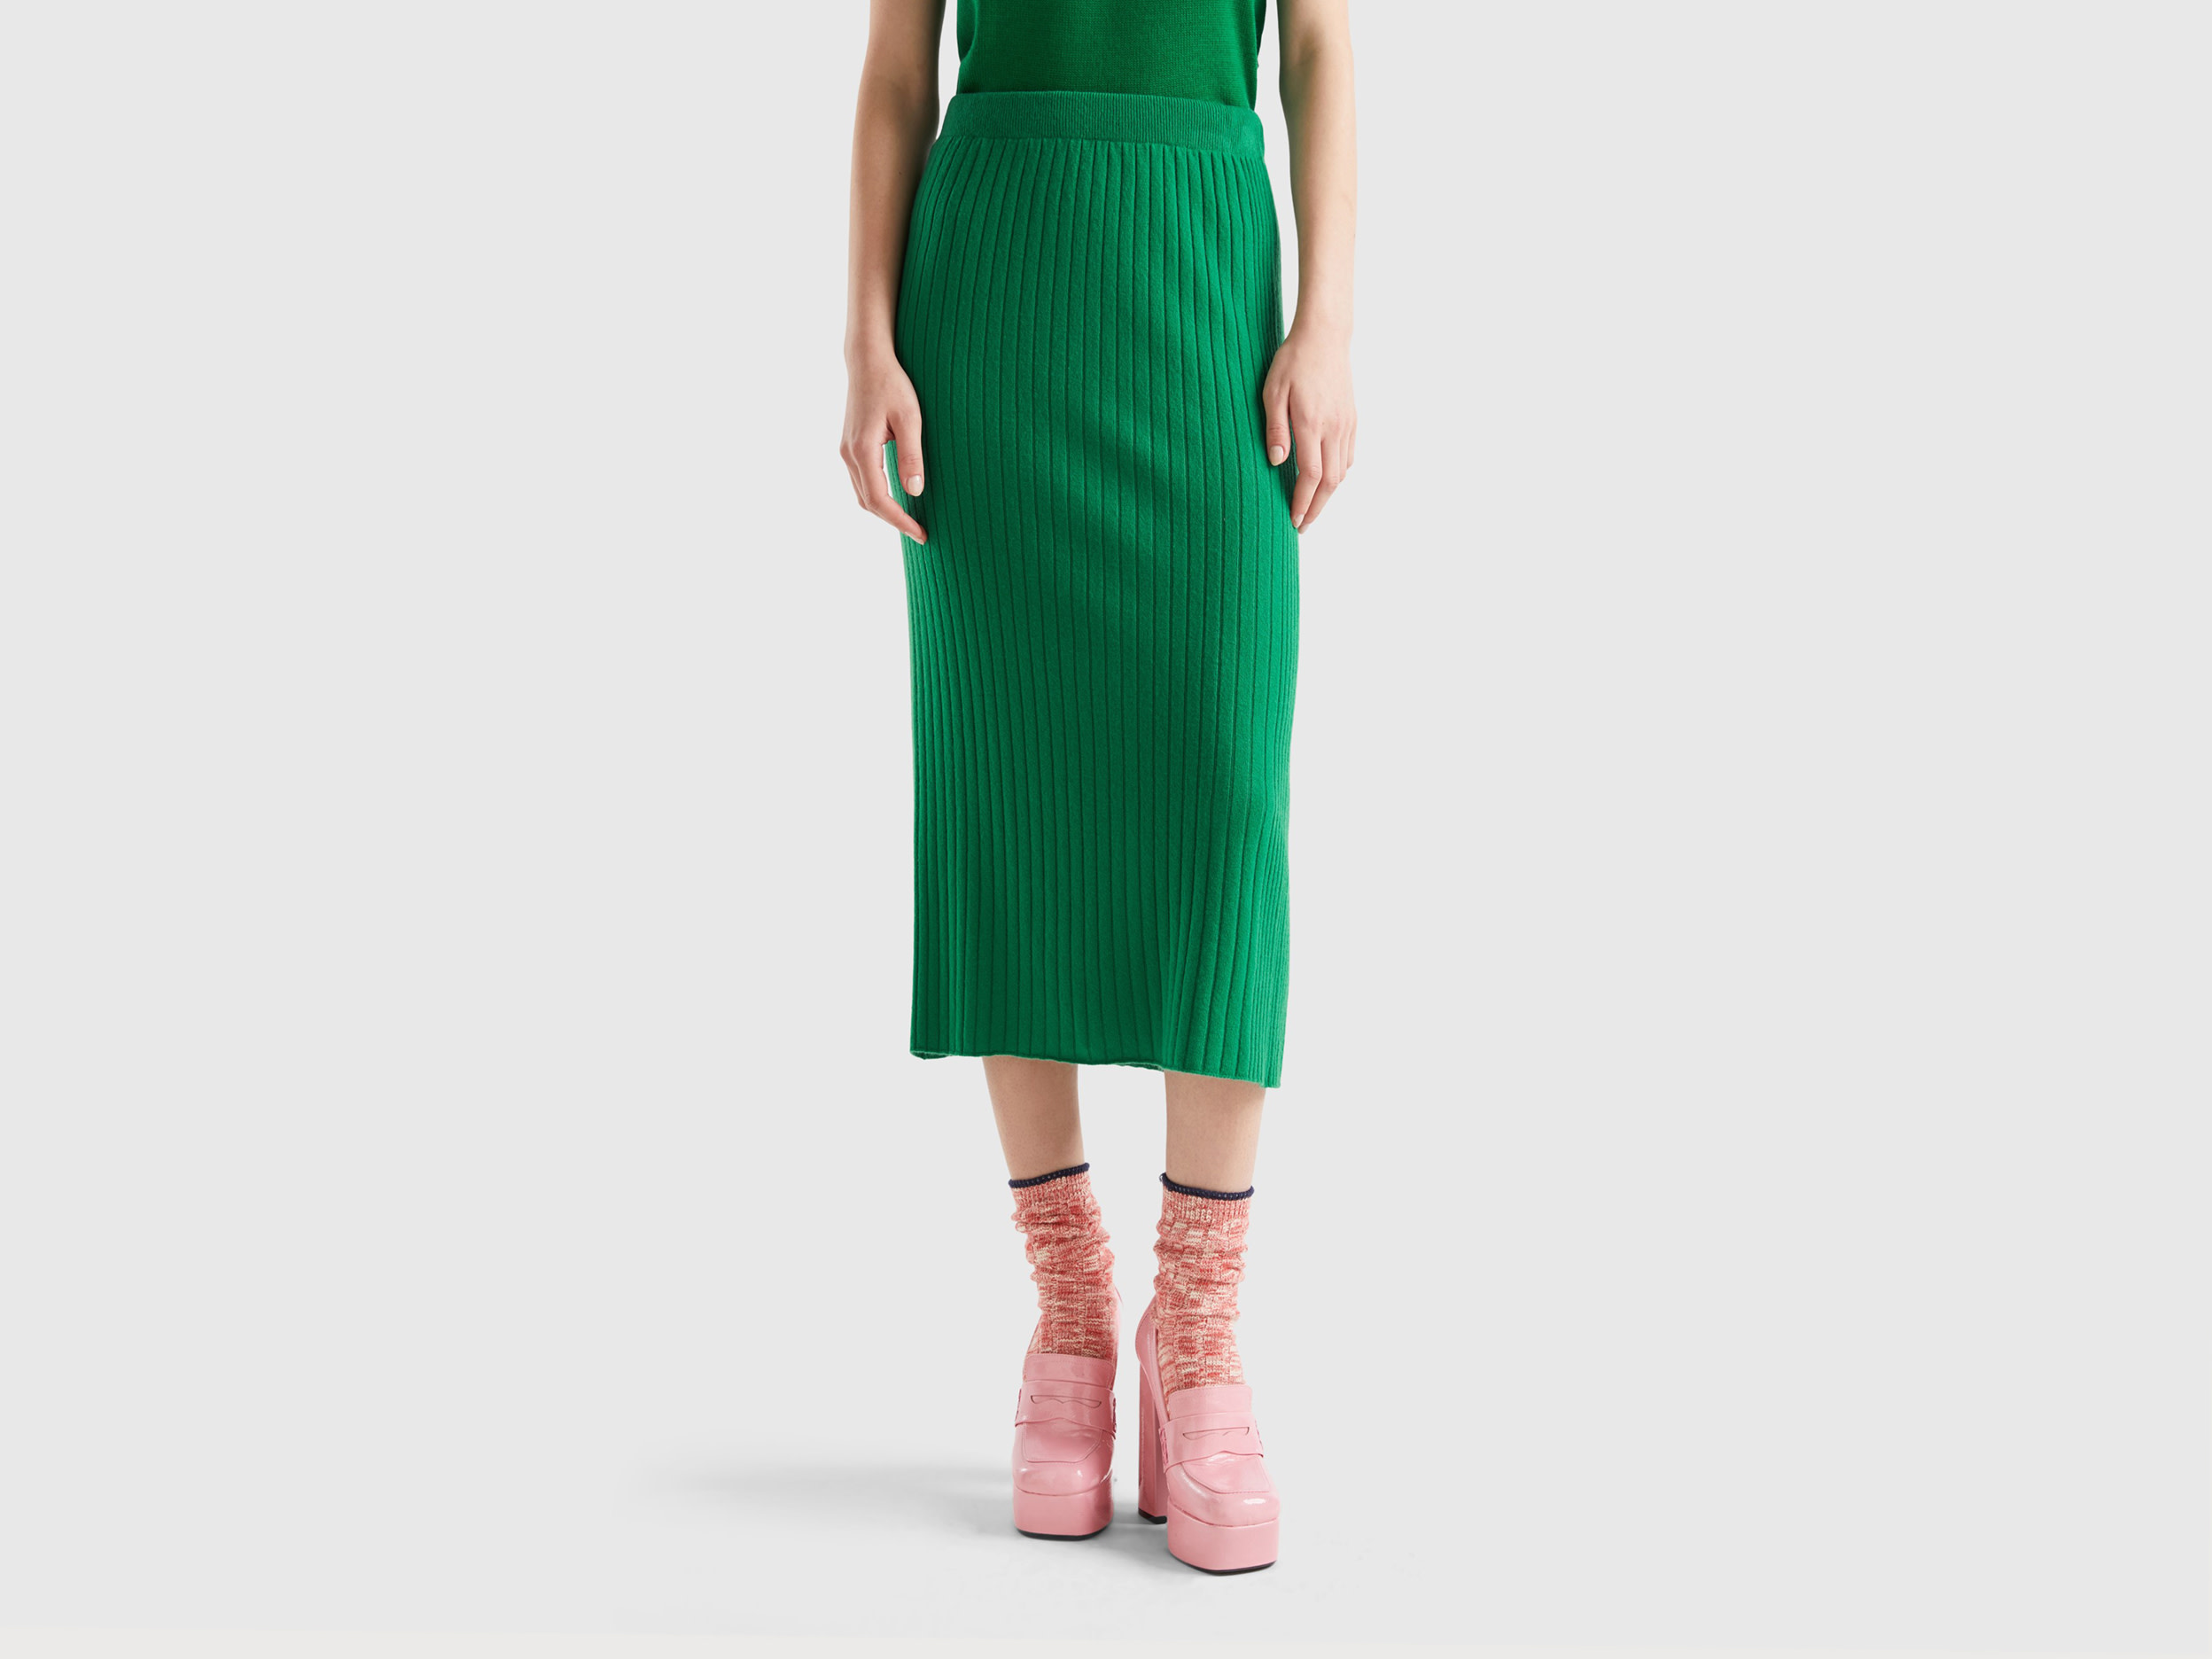 Benetton, Knit Pencil Skirt, size S, Green, Women